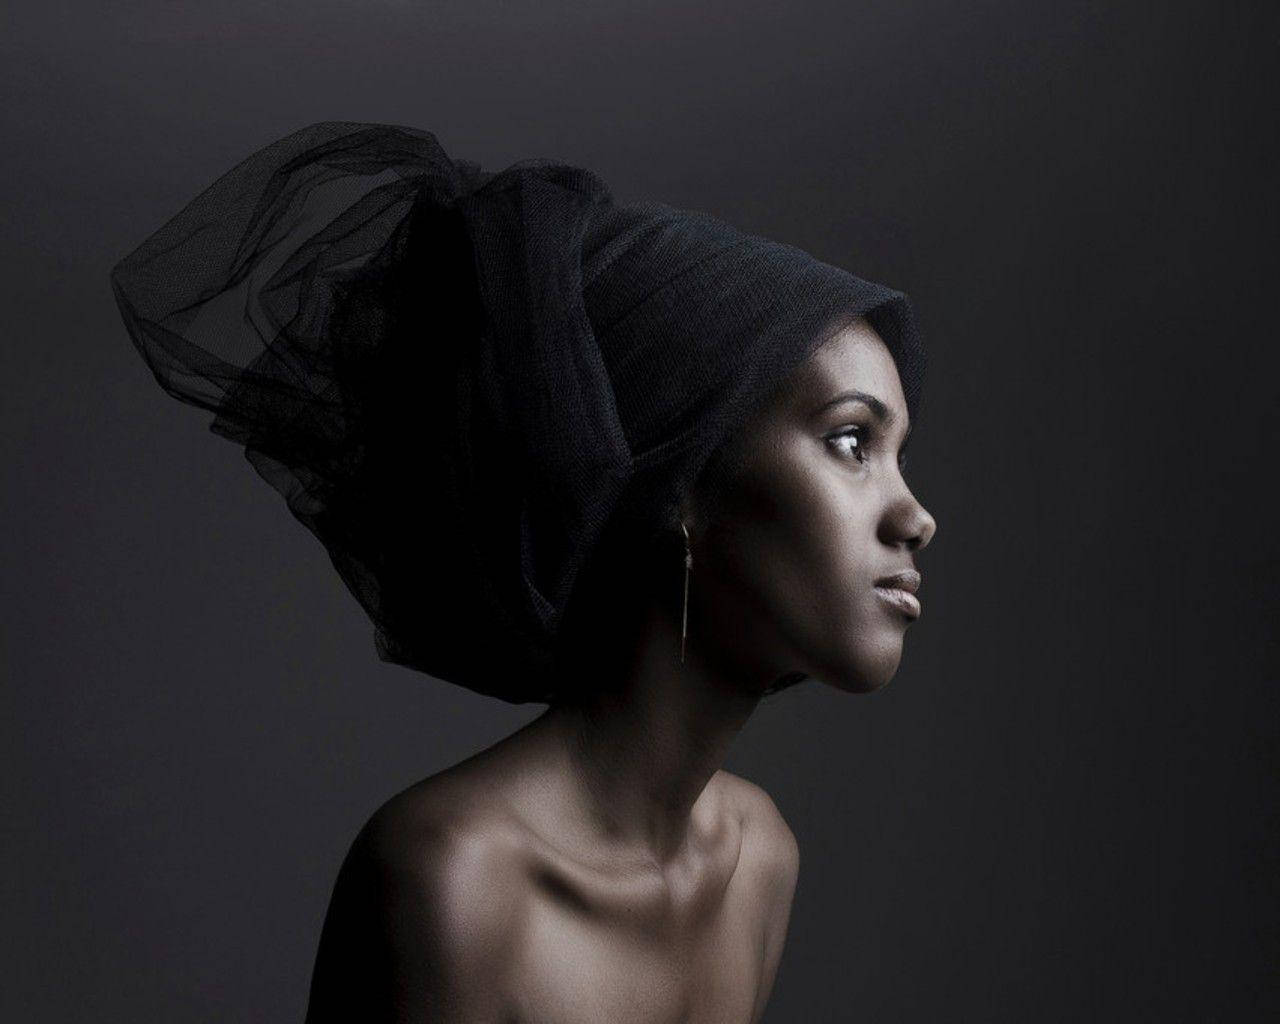 Pige med sort tørklæde afbilder sexede sorte kvinder Wallpaper